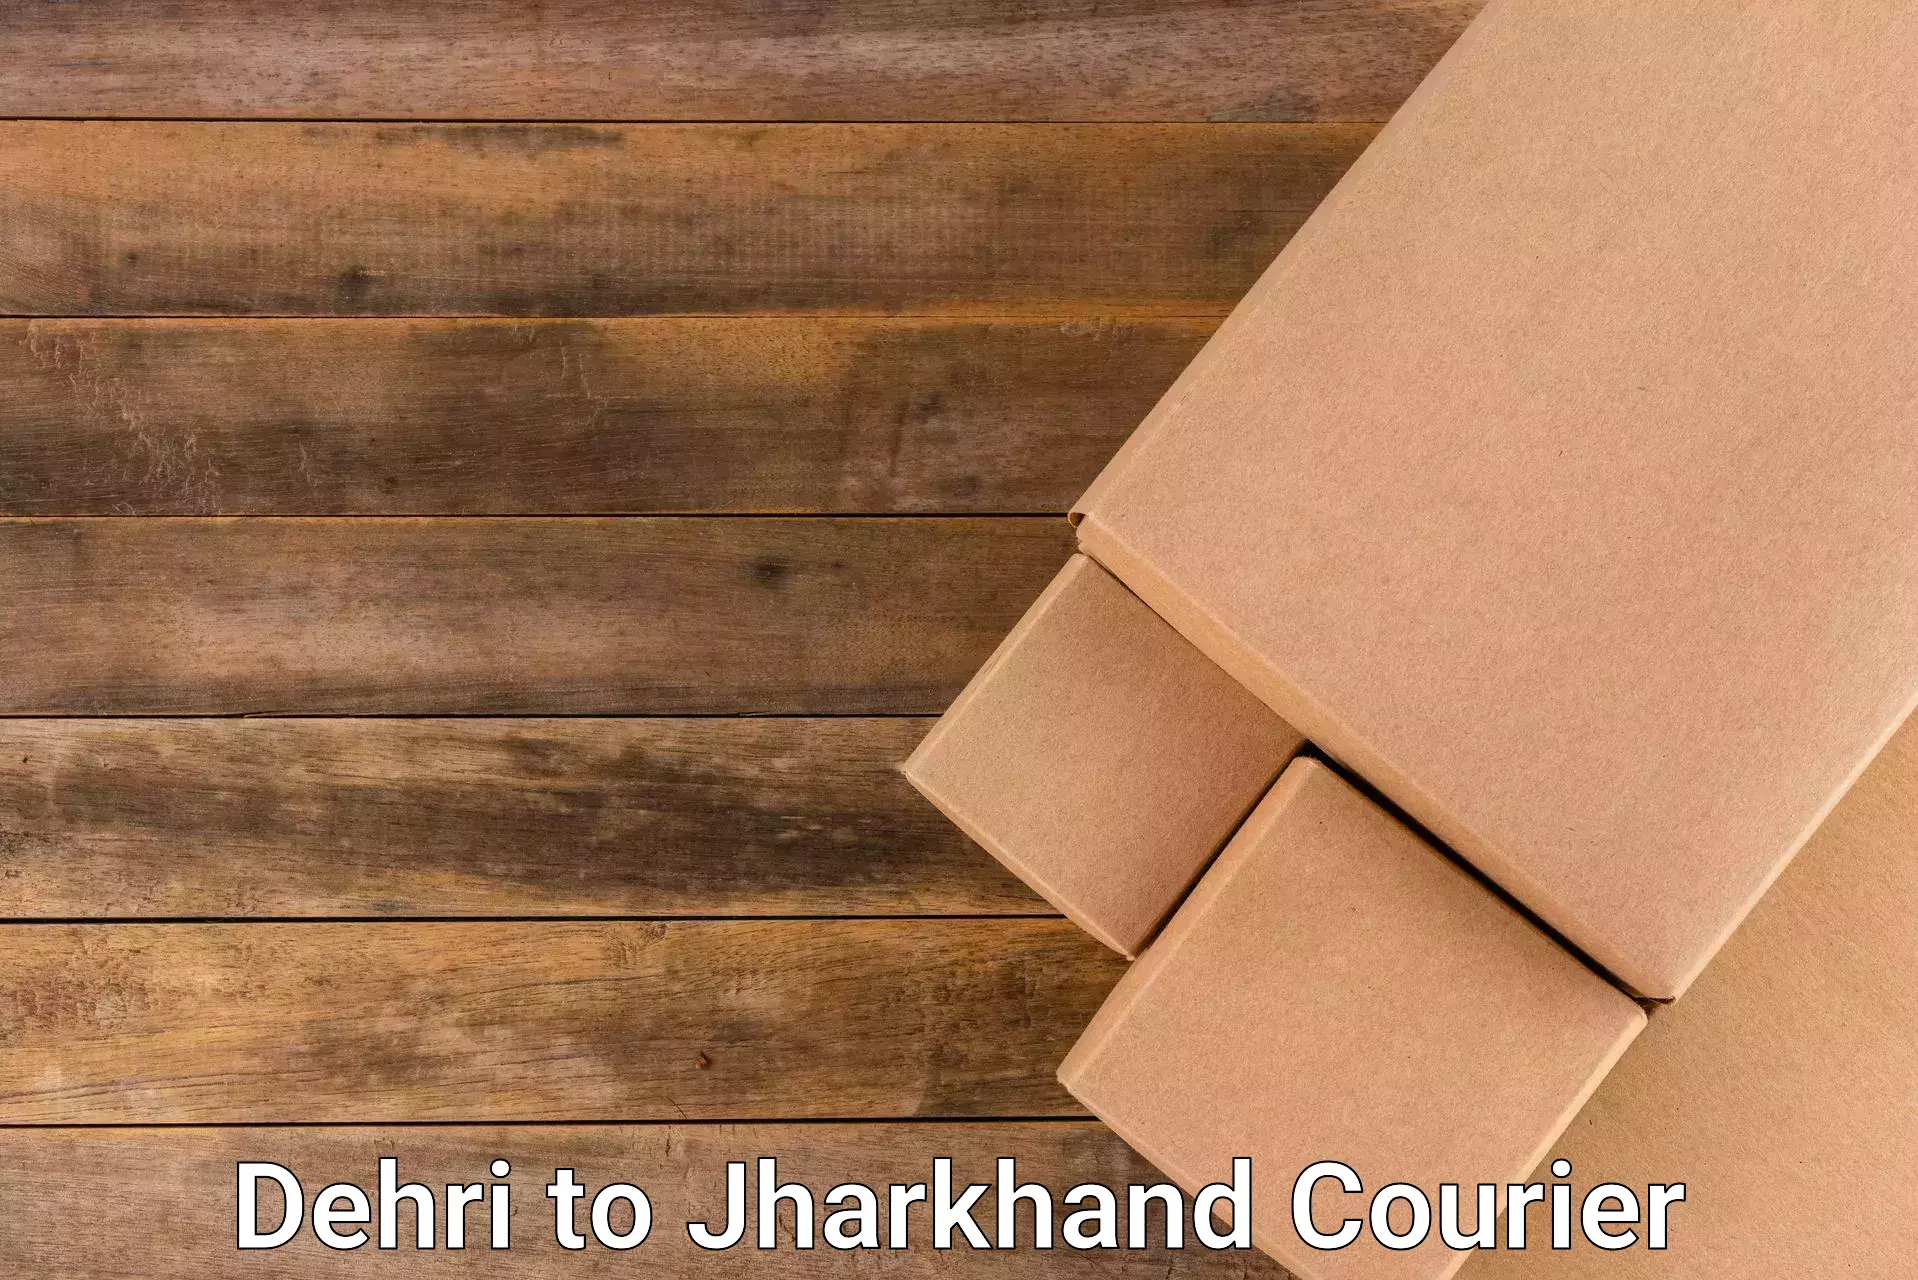 Urban courier service Dehri to IIT Dhanbad